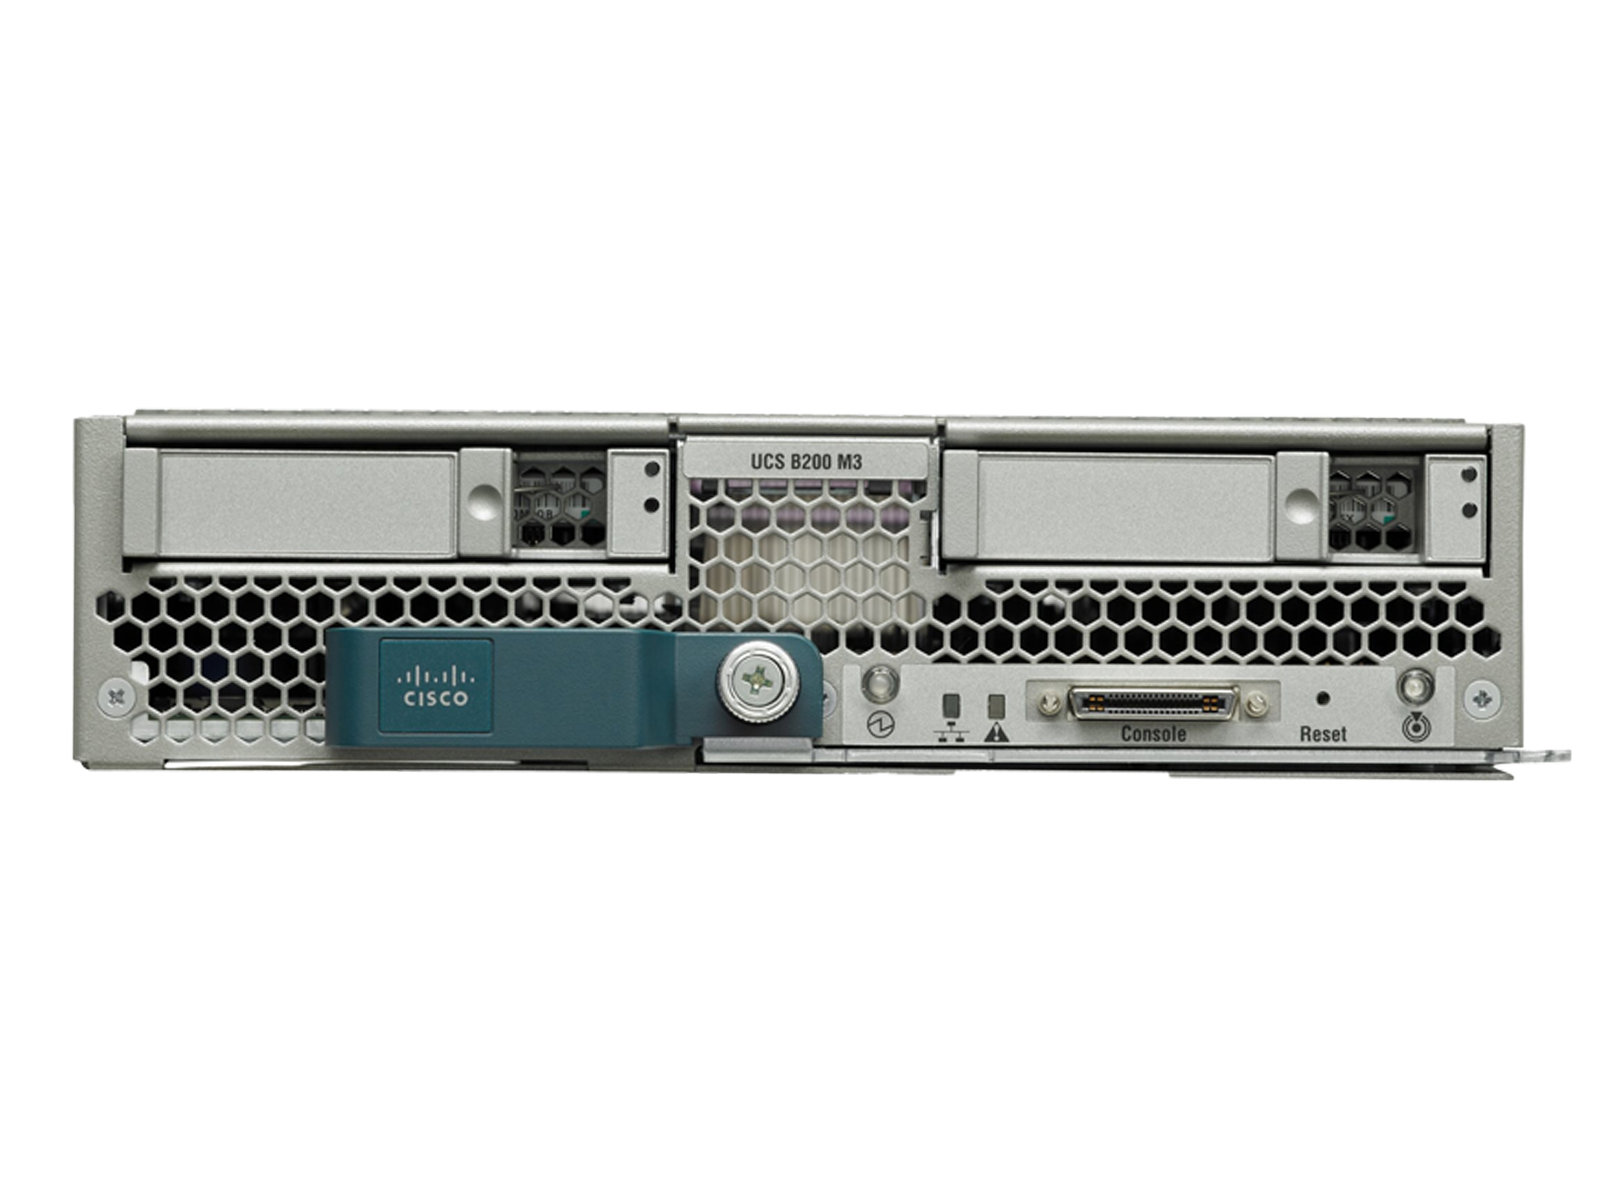 Cisco B200 M3 Dual E5-2670V2 10C 2.50GHz 4x16GB=64GB 1866MHz Blade Server 14900R.